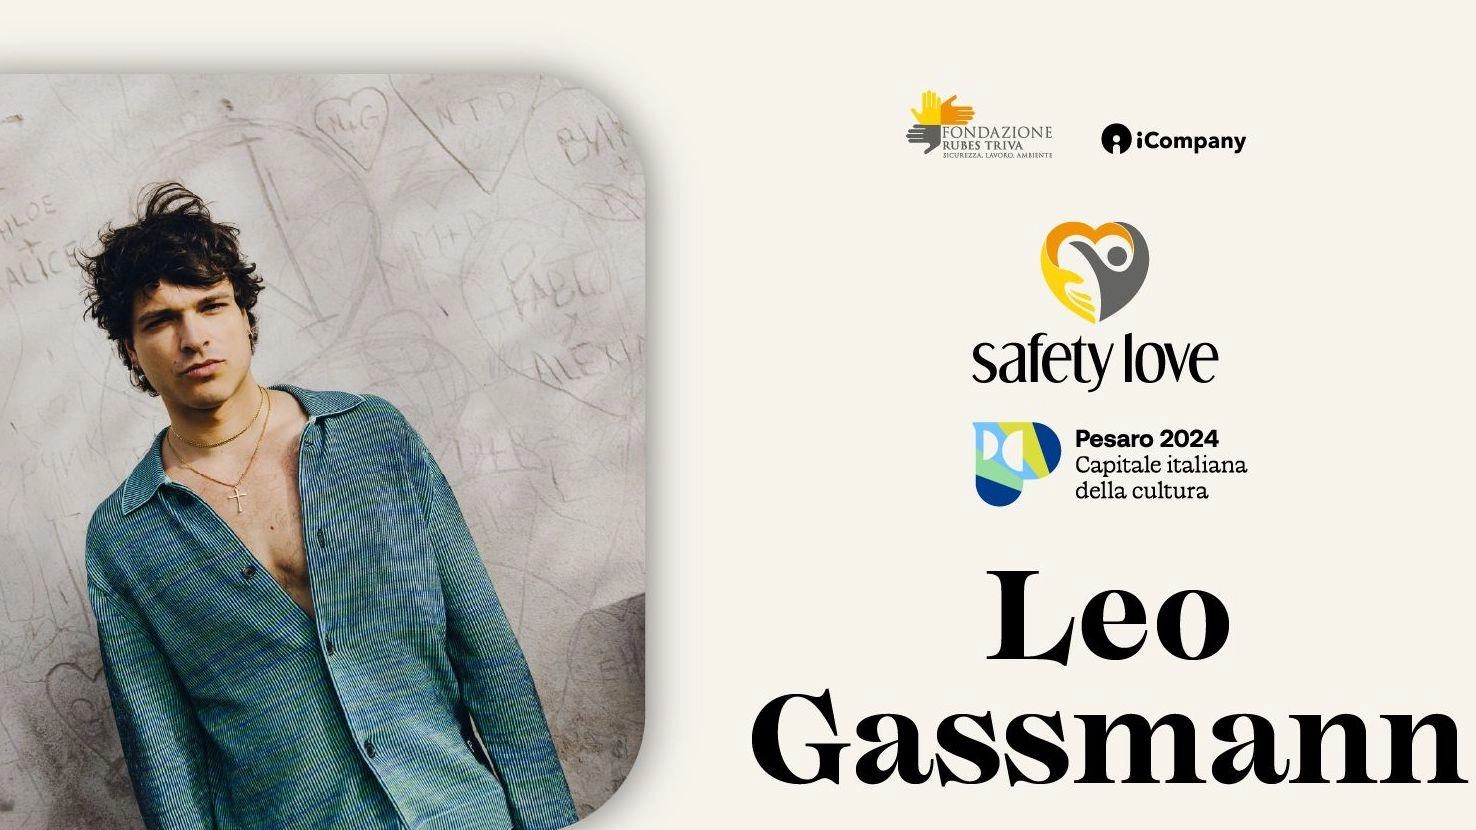 Leo Gassman aprirà "Safety Love", lo show gratuito che farà da prologo alla 3ª edizione del Festival internazionale della salute e sicurezza sul lavoro .